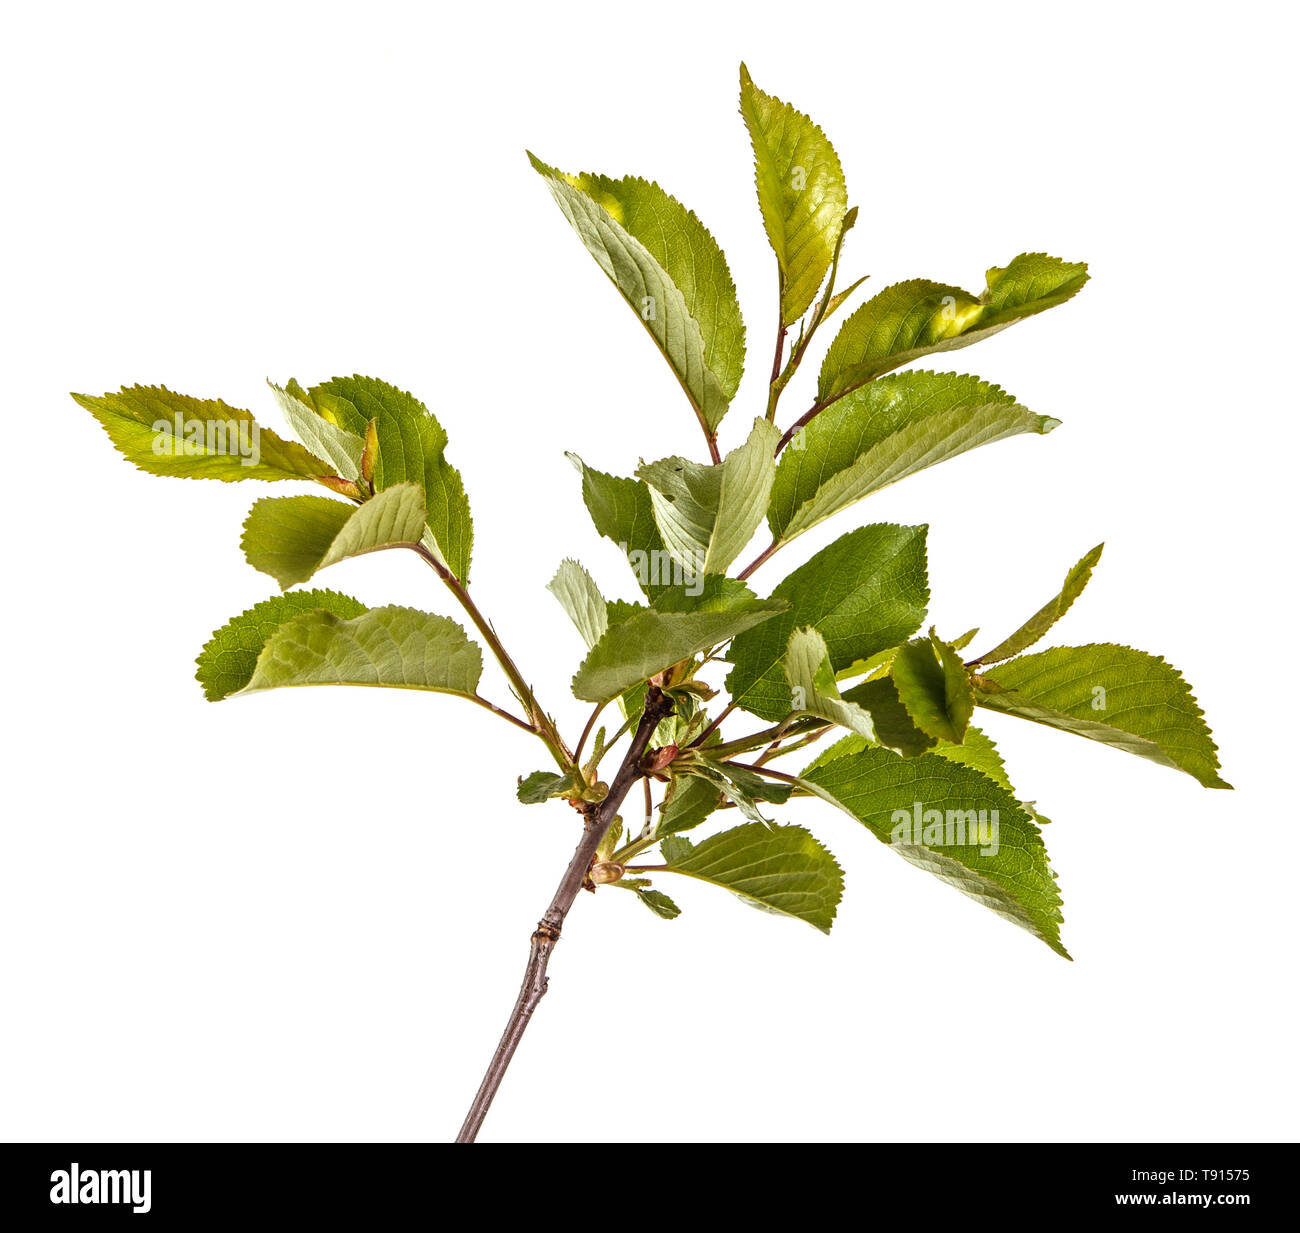 Branche d'un cerisier avec des feuilles vertes. Isolated on white Banque D'Images